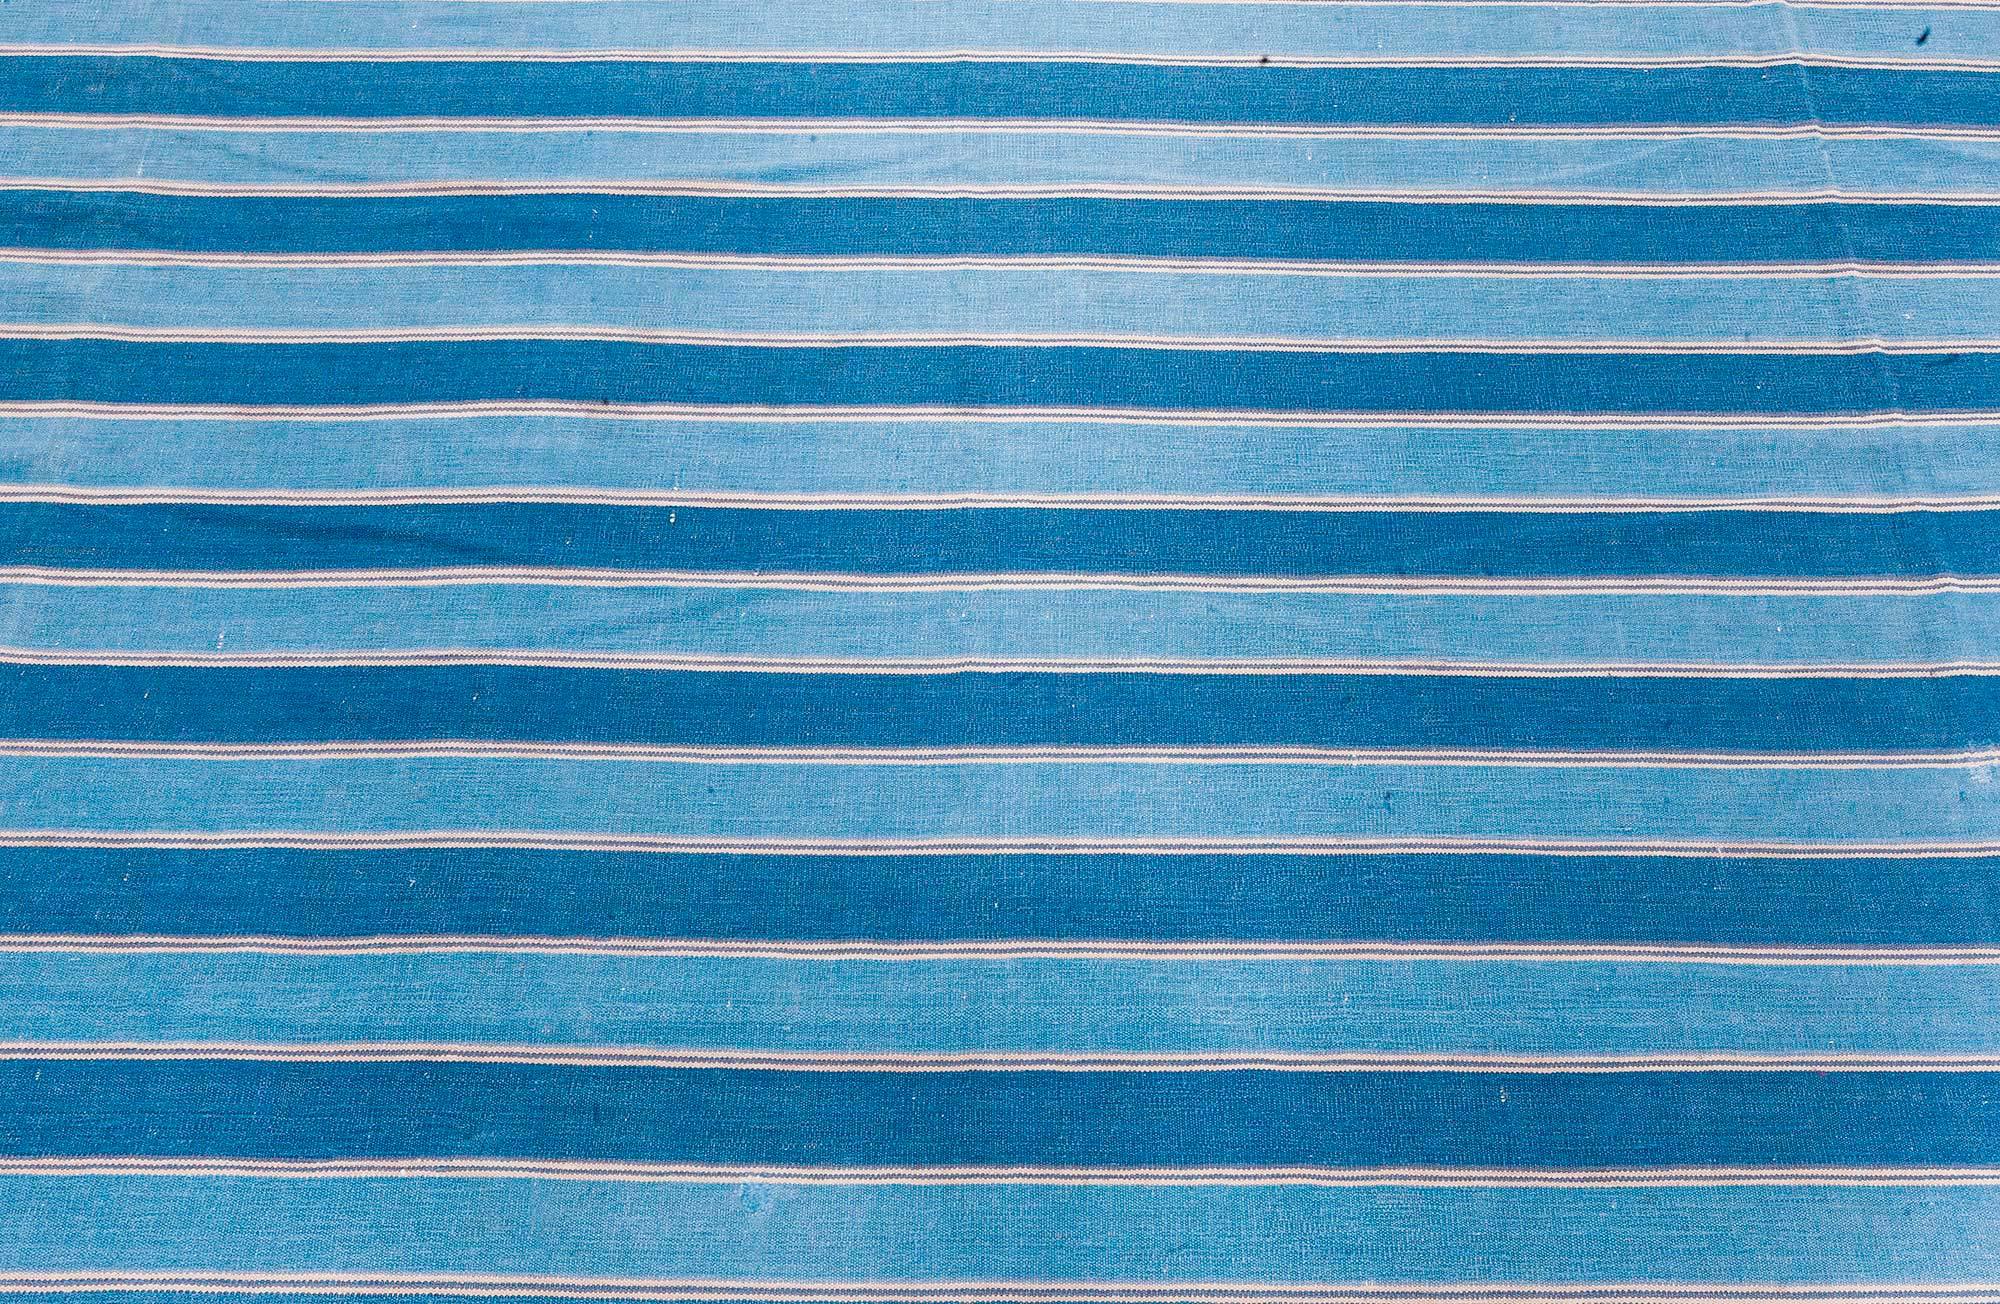 Vintage Indian Dhurrie Striped Blue Beige Rug
Size: 9'10